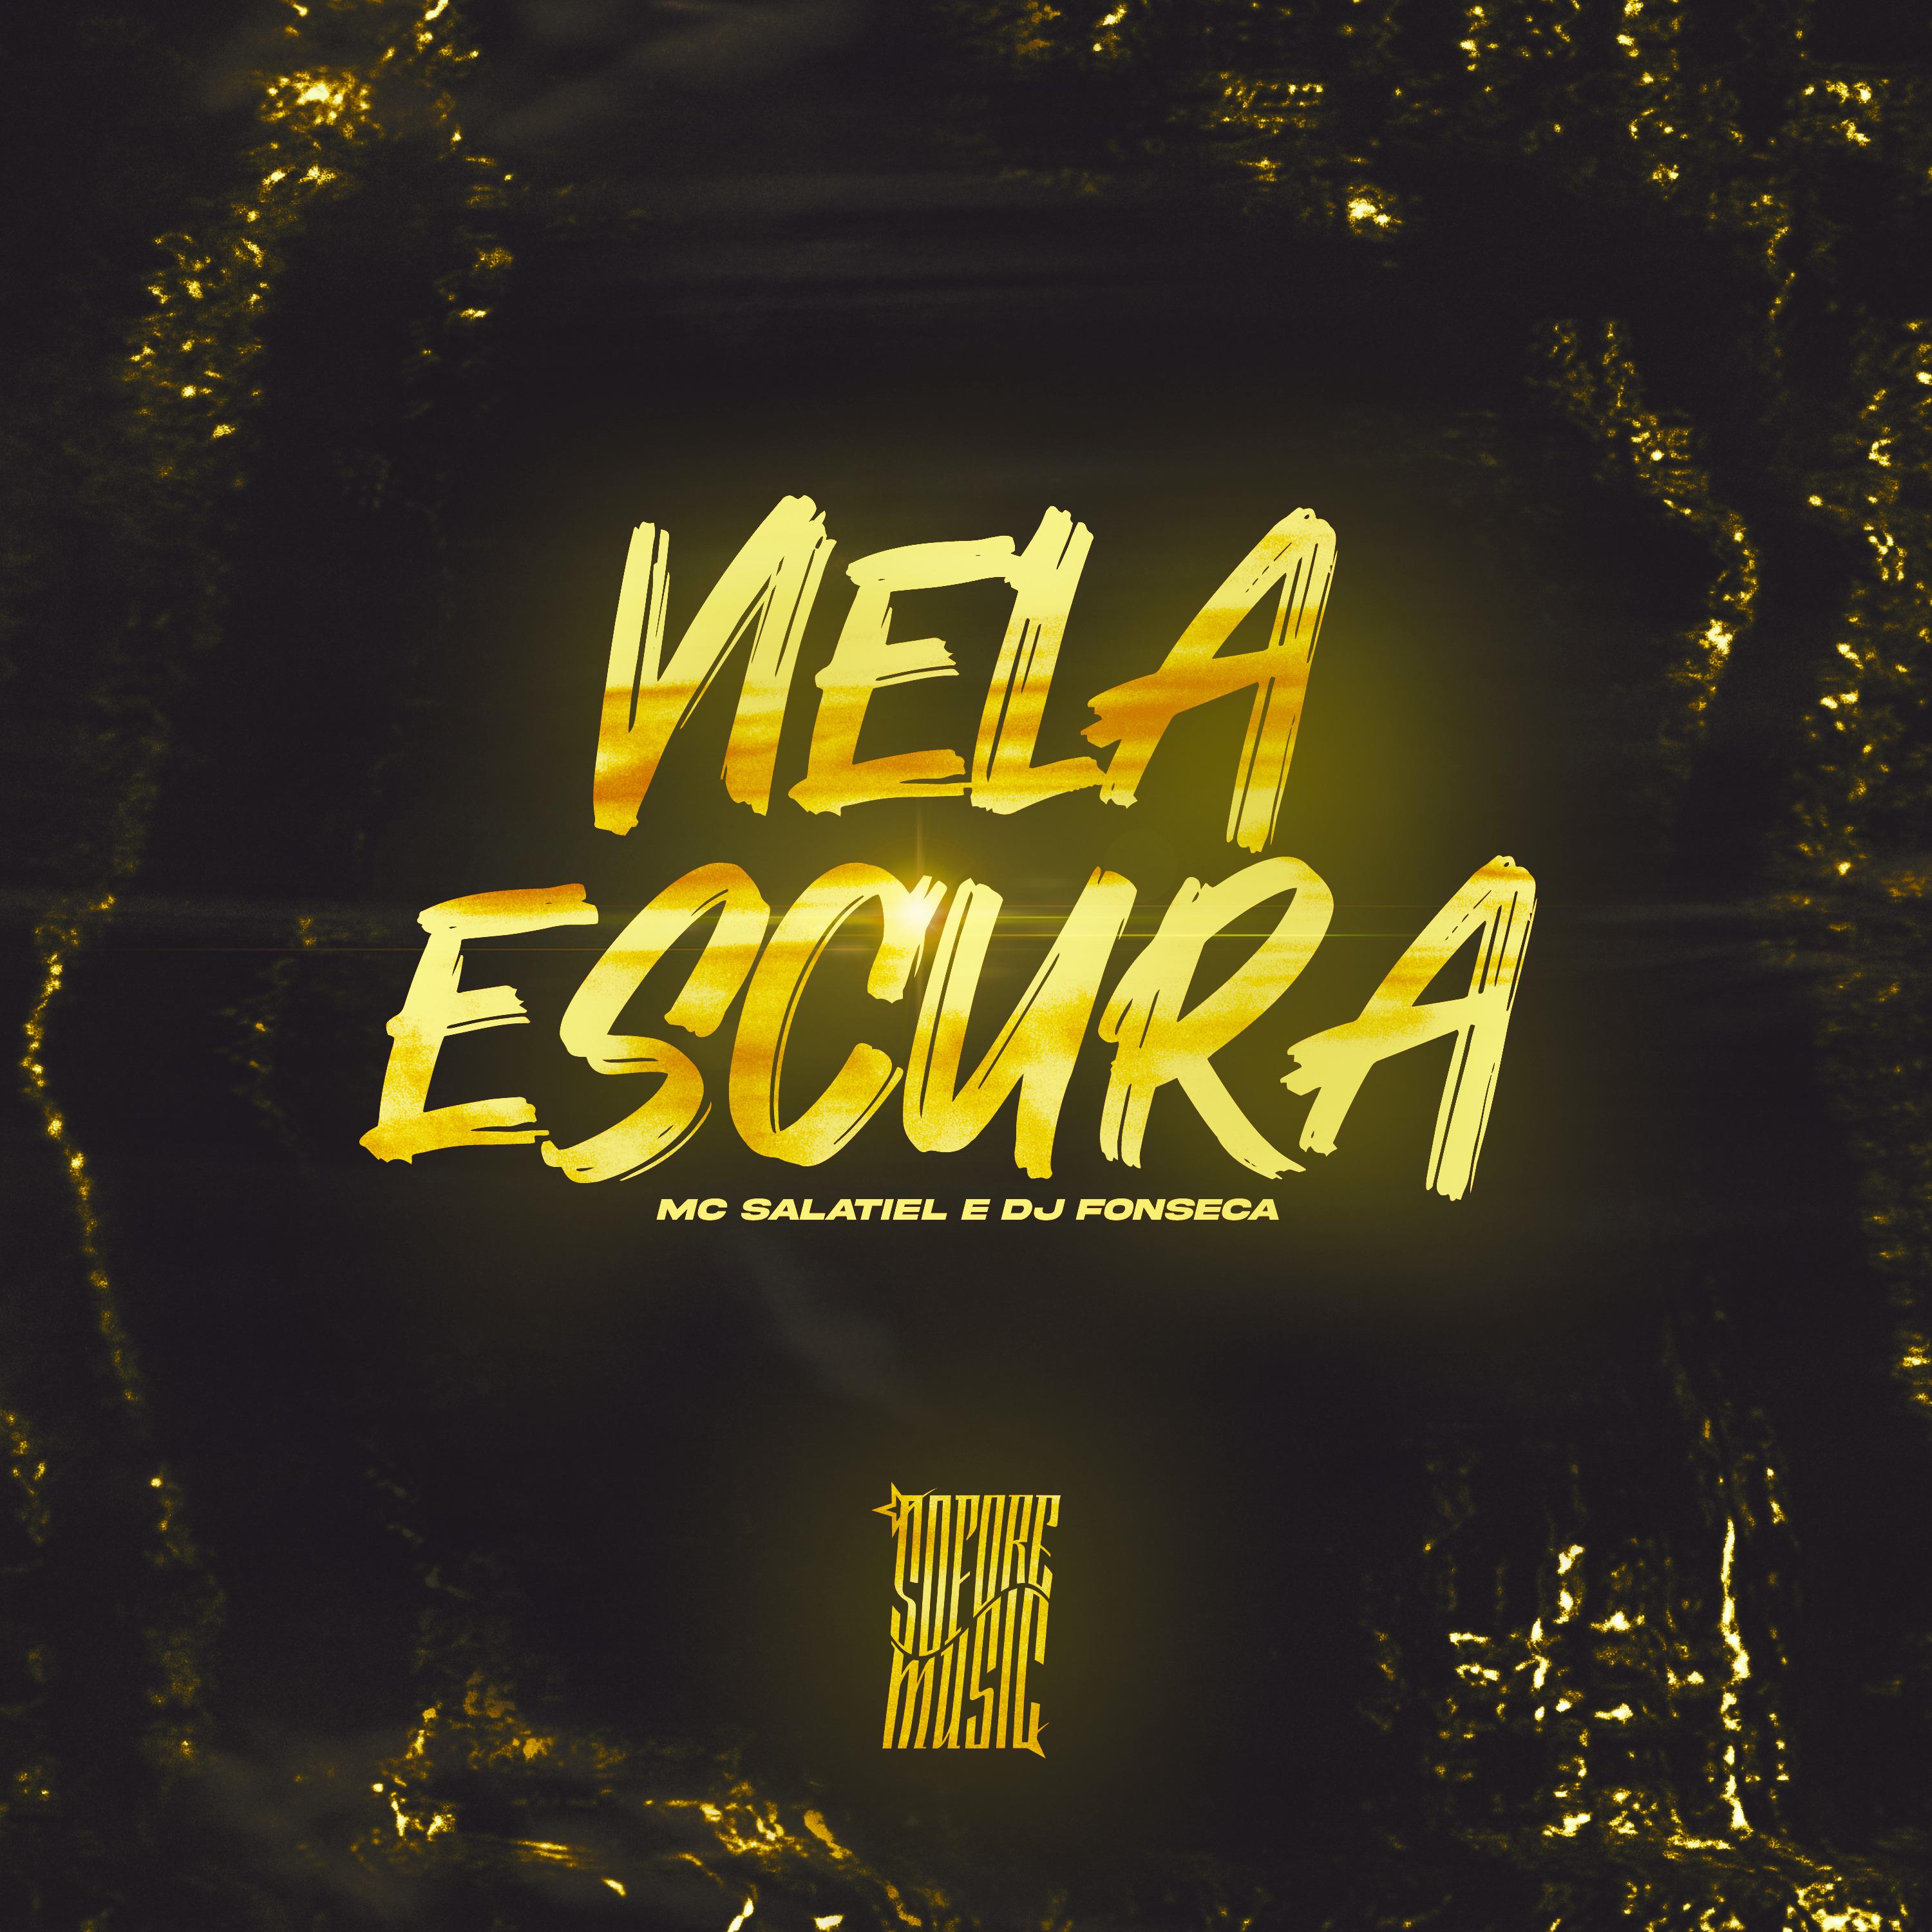 Постер альбома Viela Escura